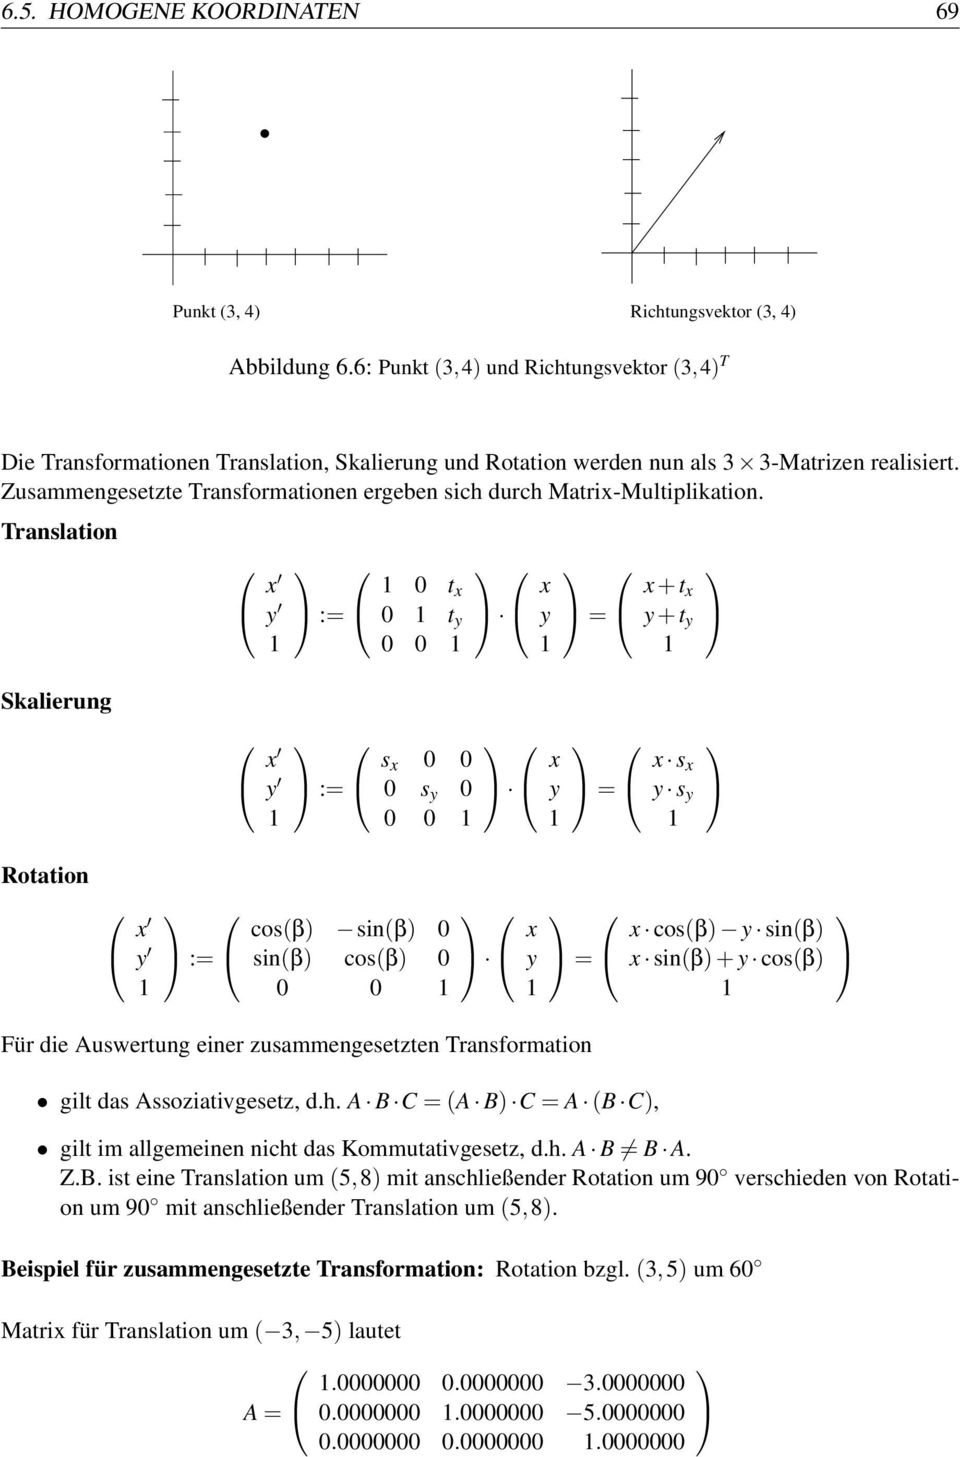 Zusammengesetzte Transformationen ergeben sich durch Matrix-Multiplikation.